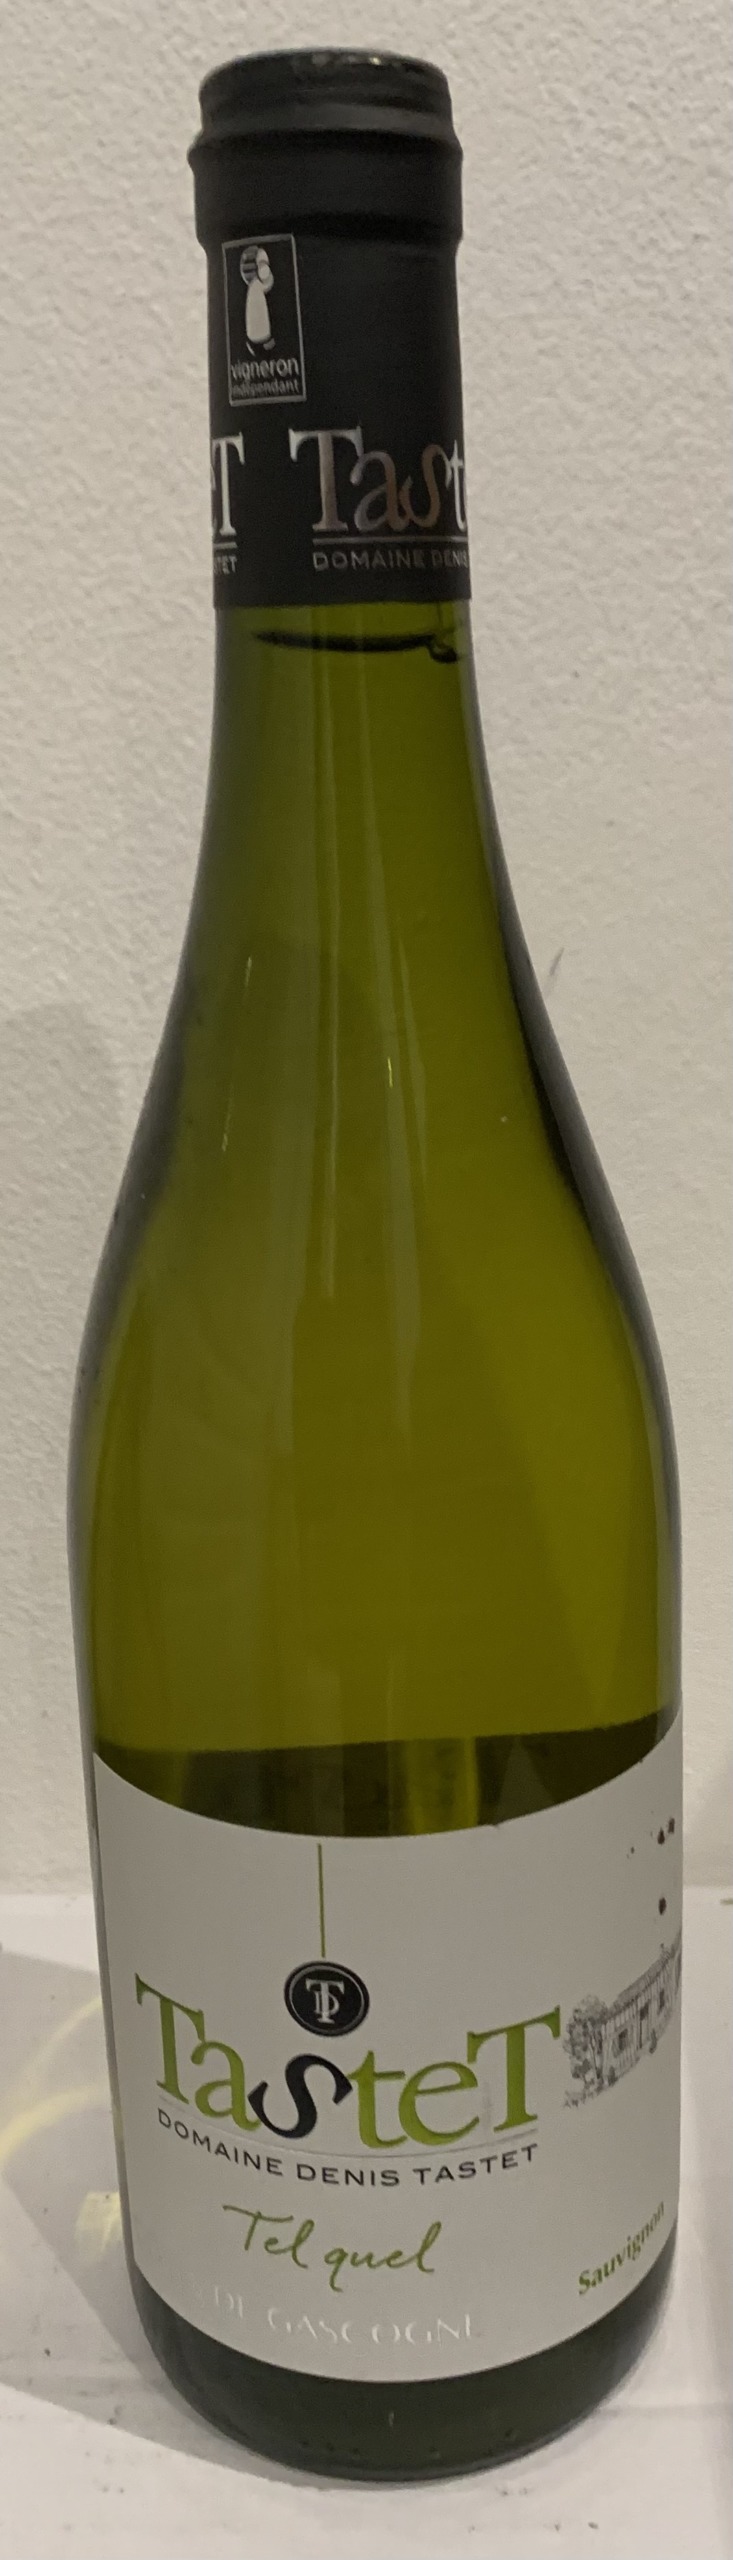 Vin blanc sec - Domaine Tastet - Cuvée Tel quel - 2019